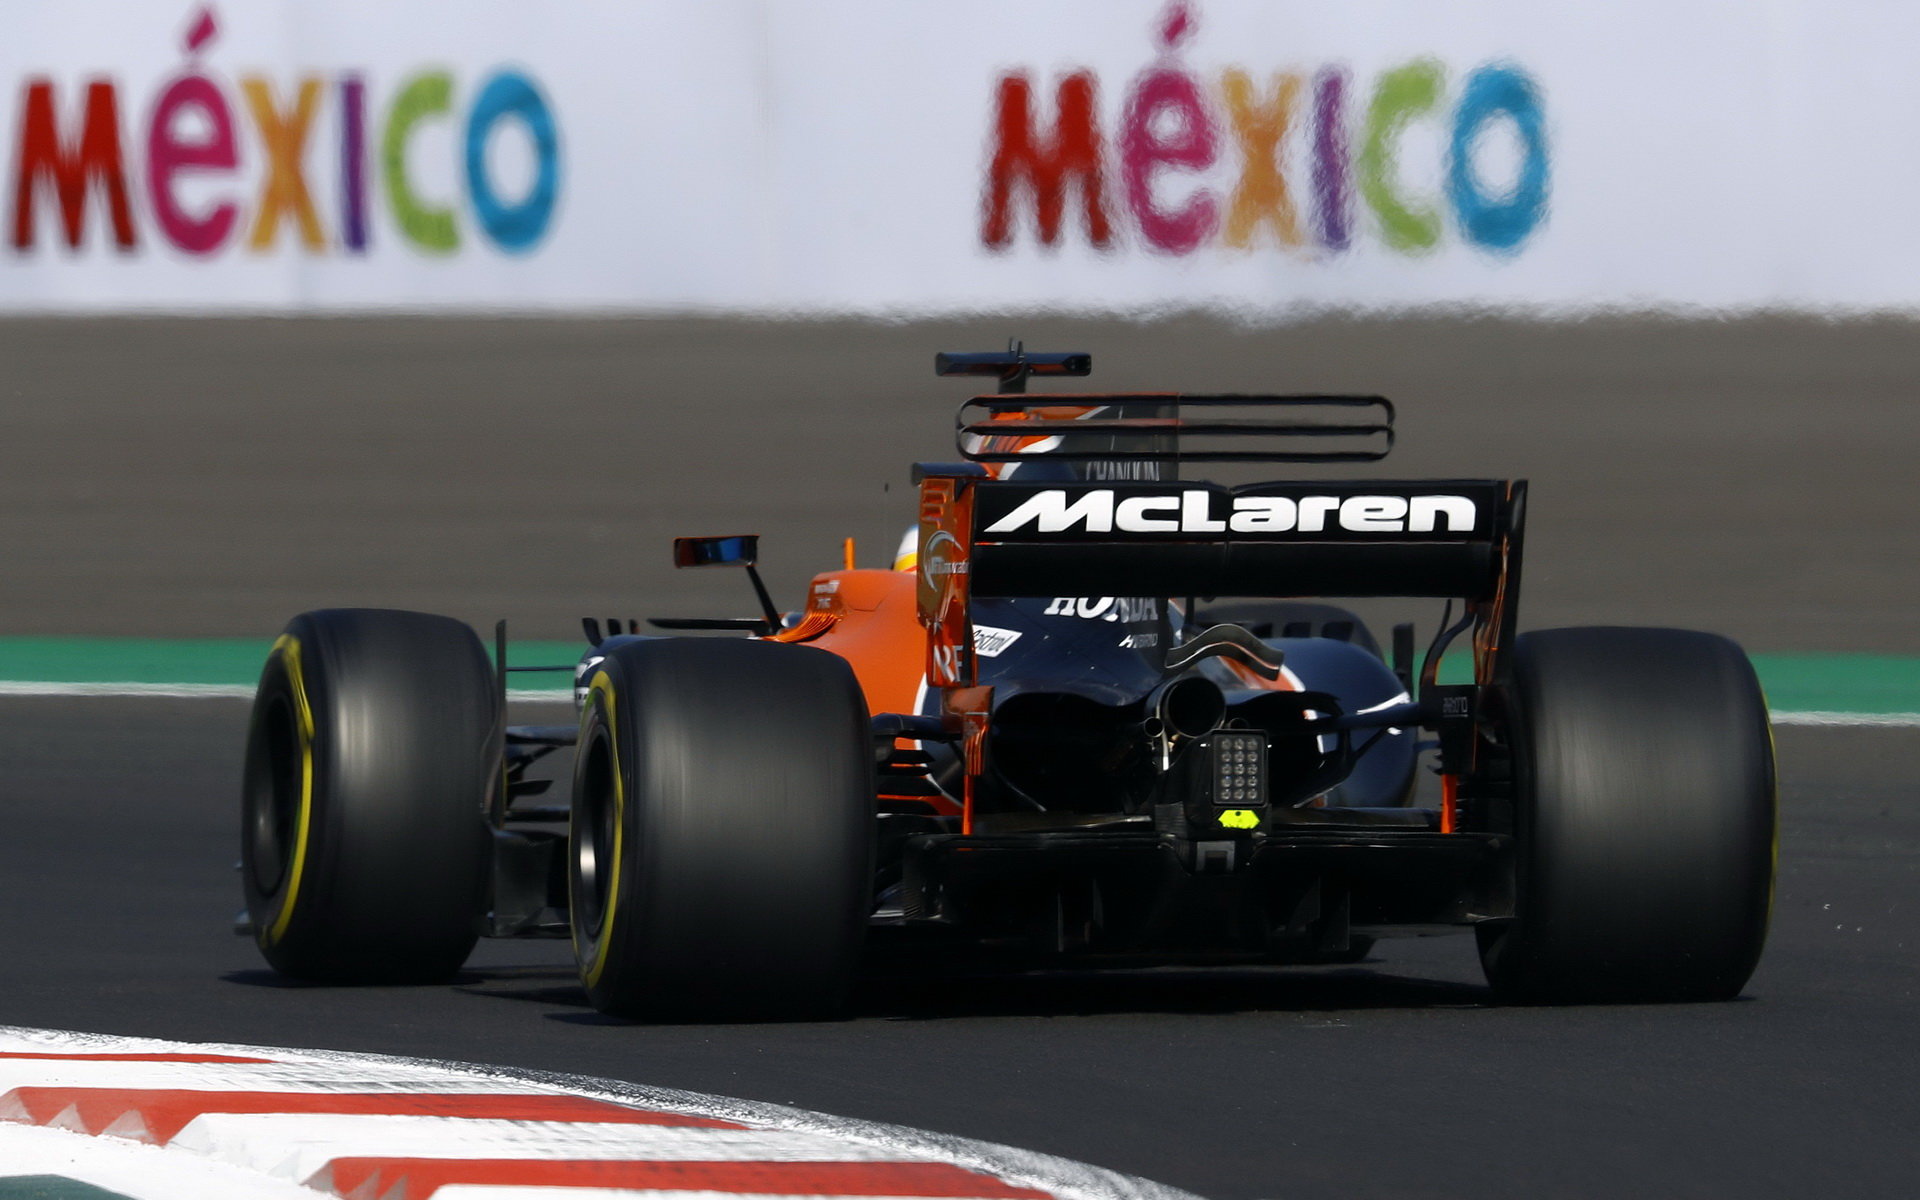 Šasi McLarenu MCL32 letos mělo na pódia, jeho konkurenceschopnost ale srážela pohonná jednotka Hondy